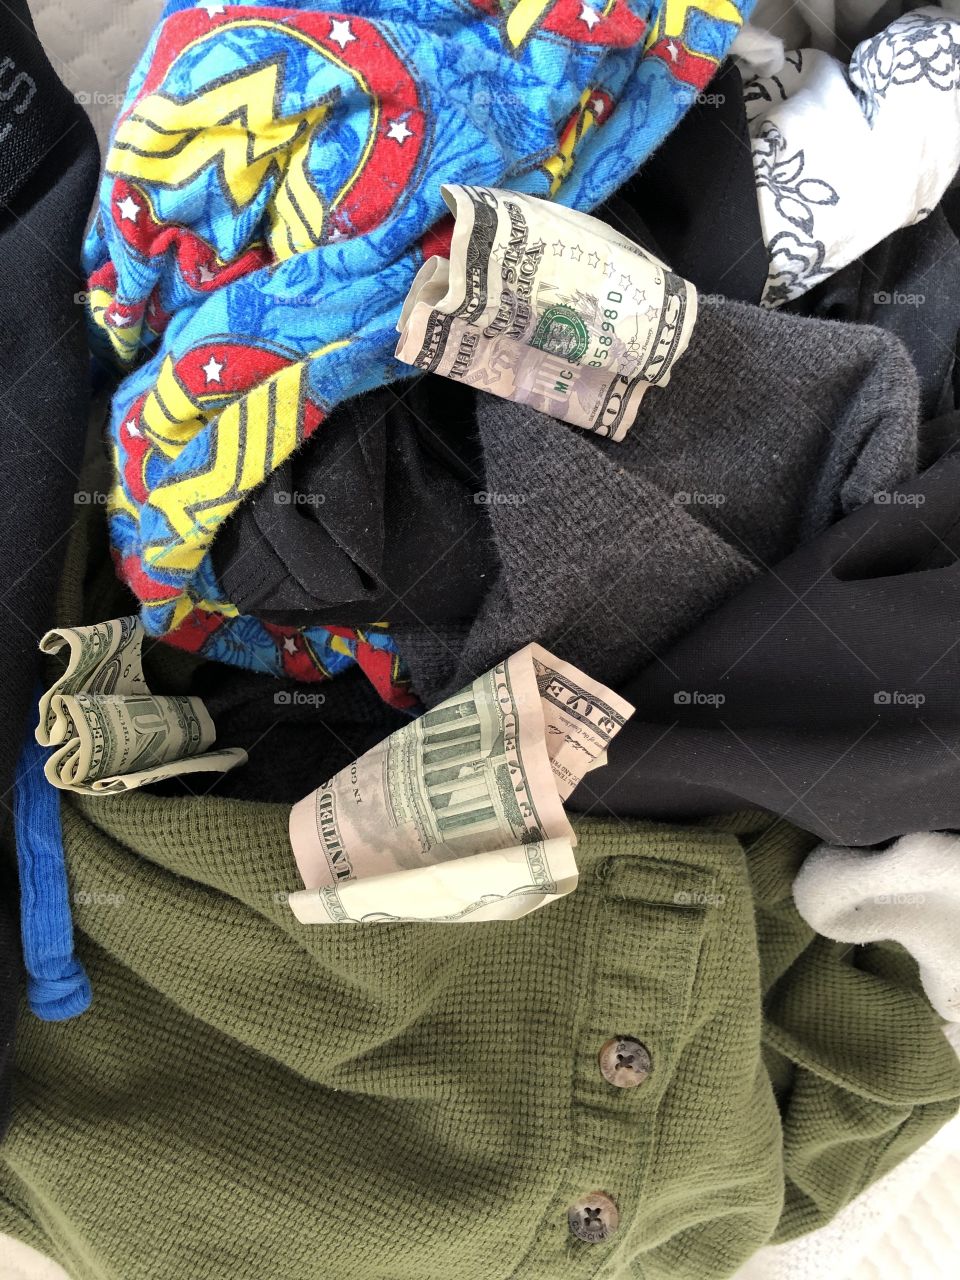 Laundry loot